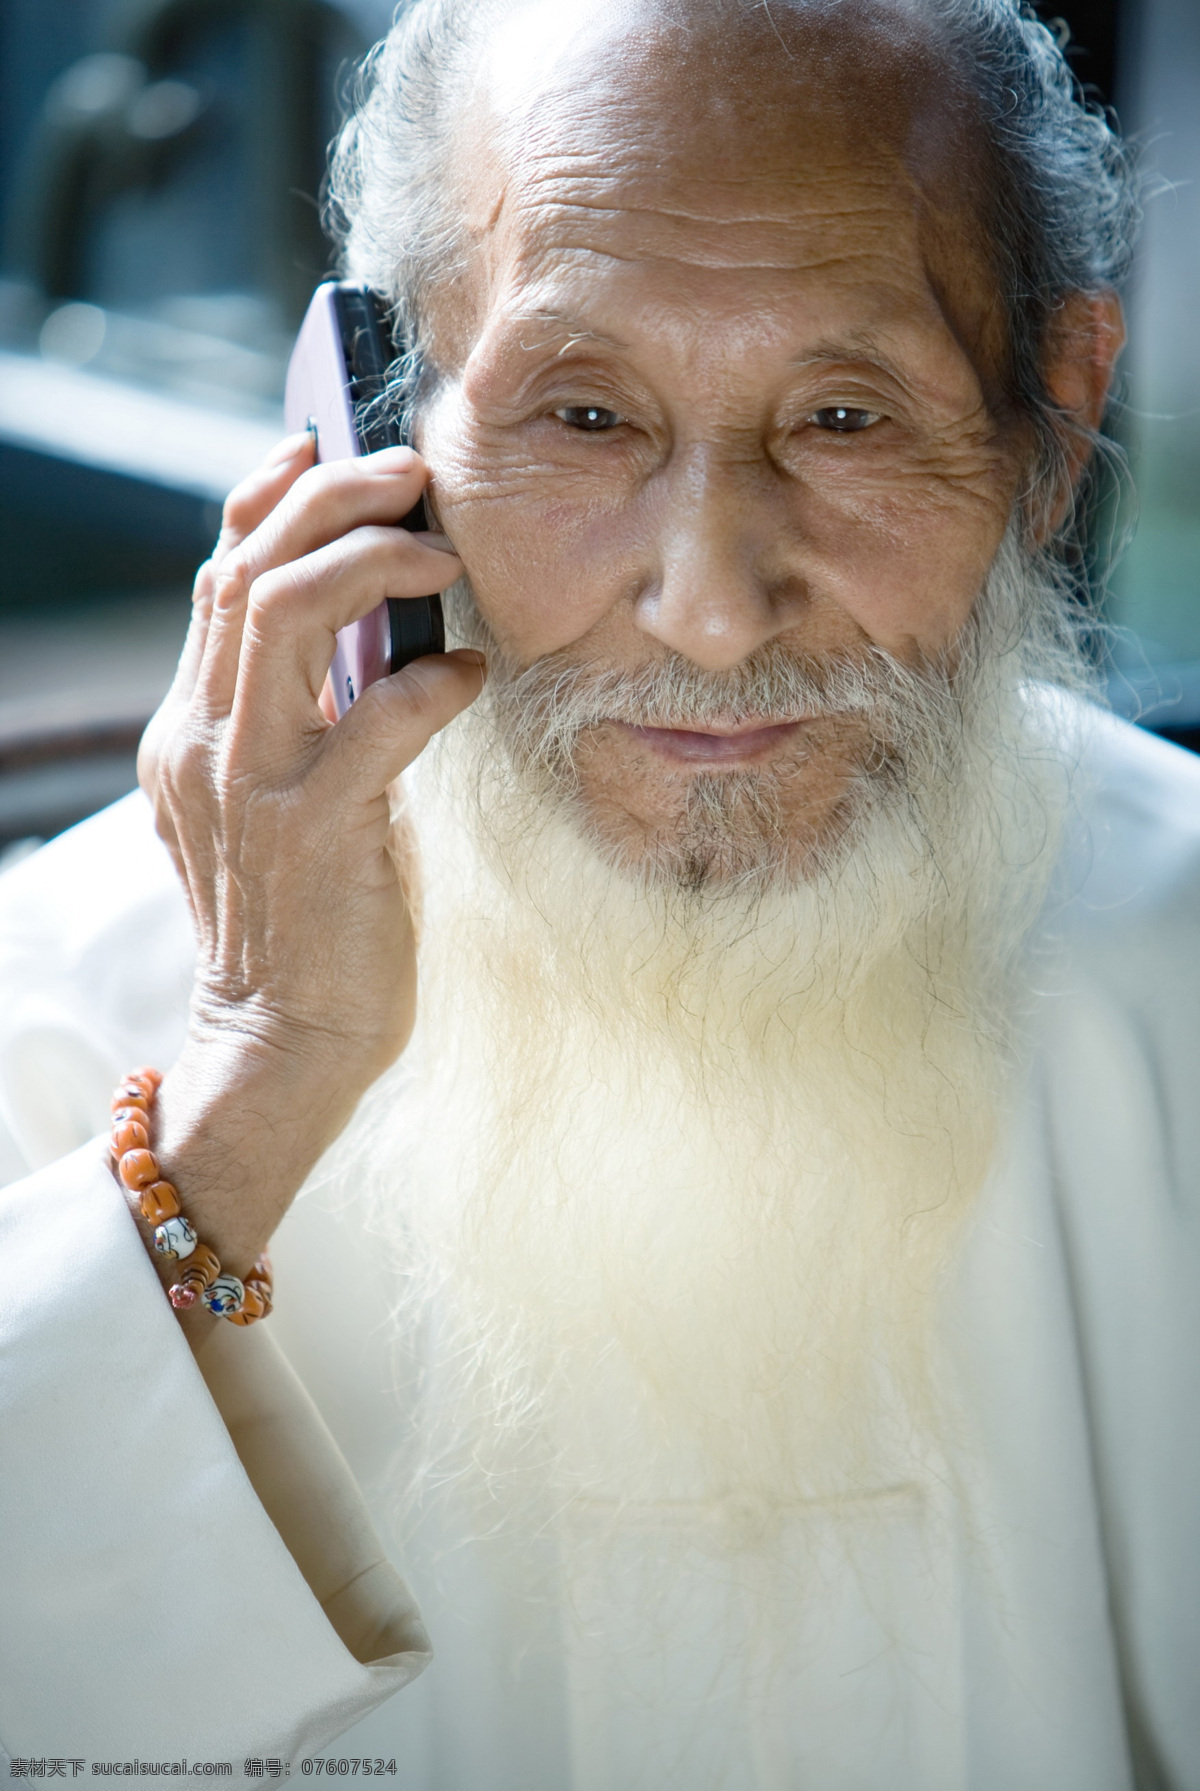 打电话的老人 老人 手机 打电话 长胡子 长胡子的老人 摄影图库 人物图库 老年人物